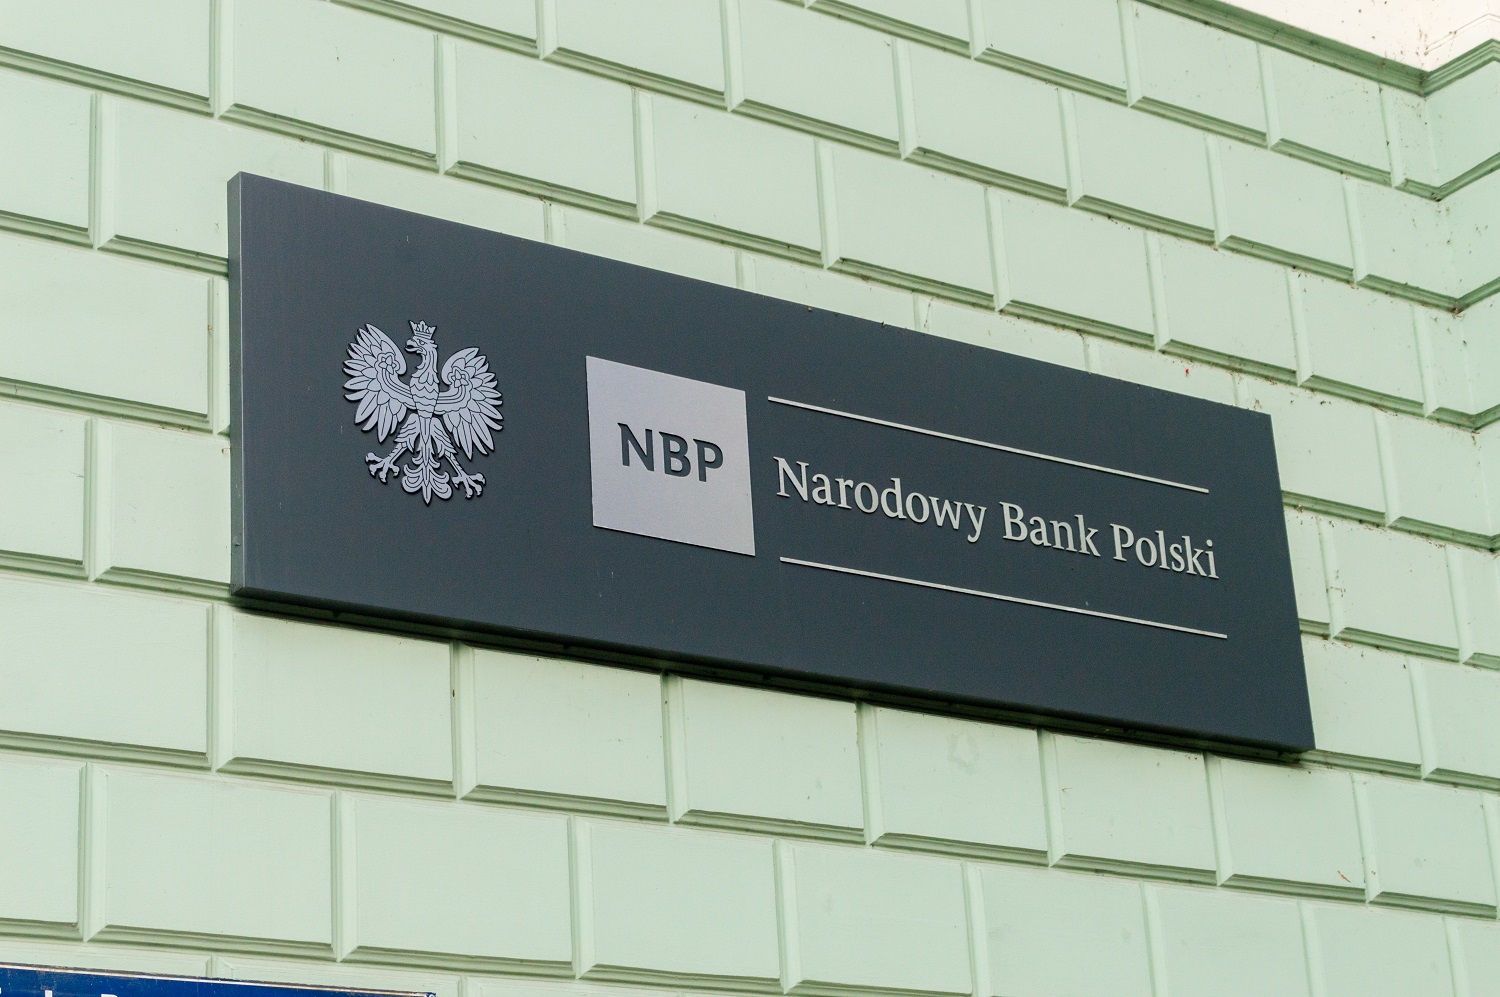 Tablica informacyjna na ścianie z godłem Polski (orzeł) oraz napisaem "NBP" i "Narodowy Bank Polski"